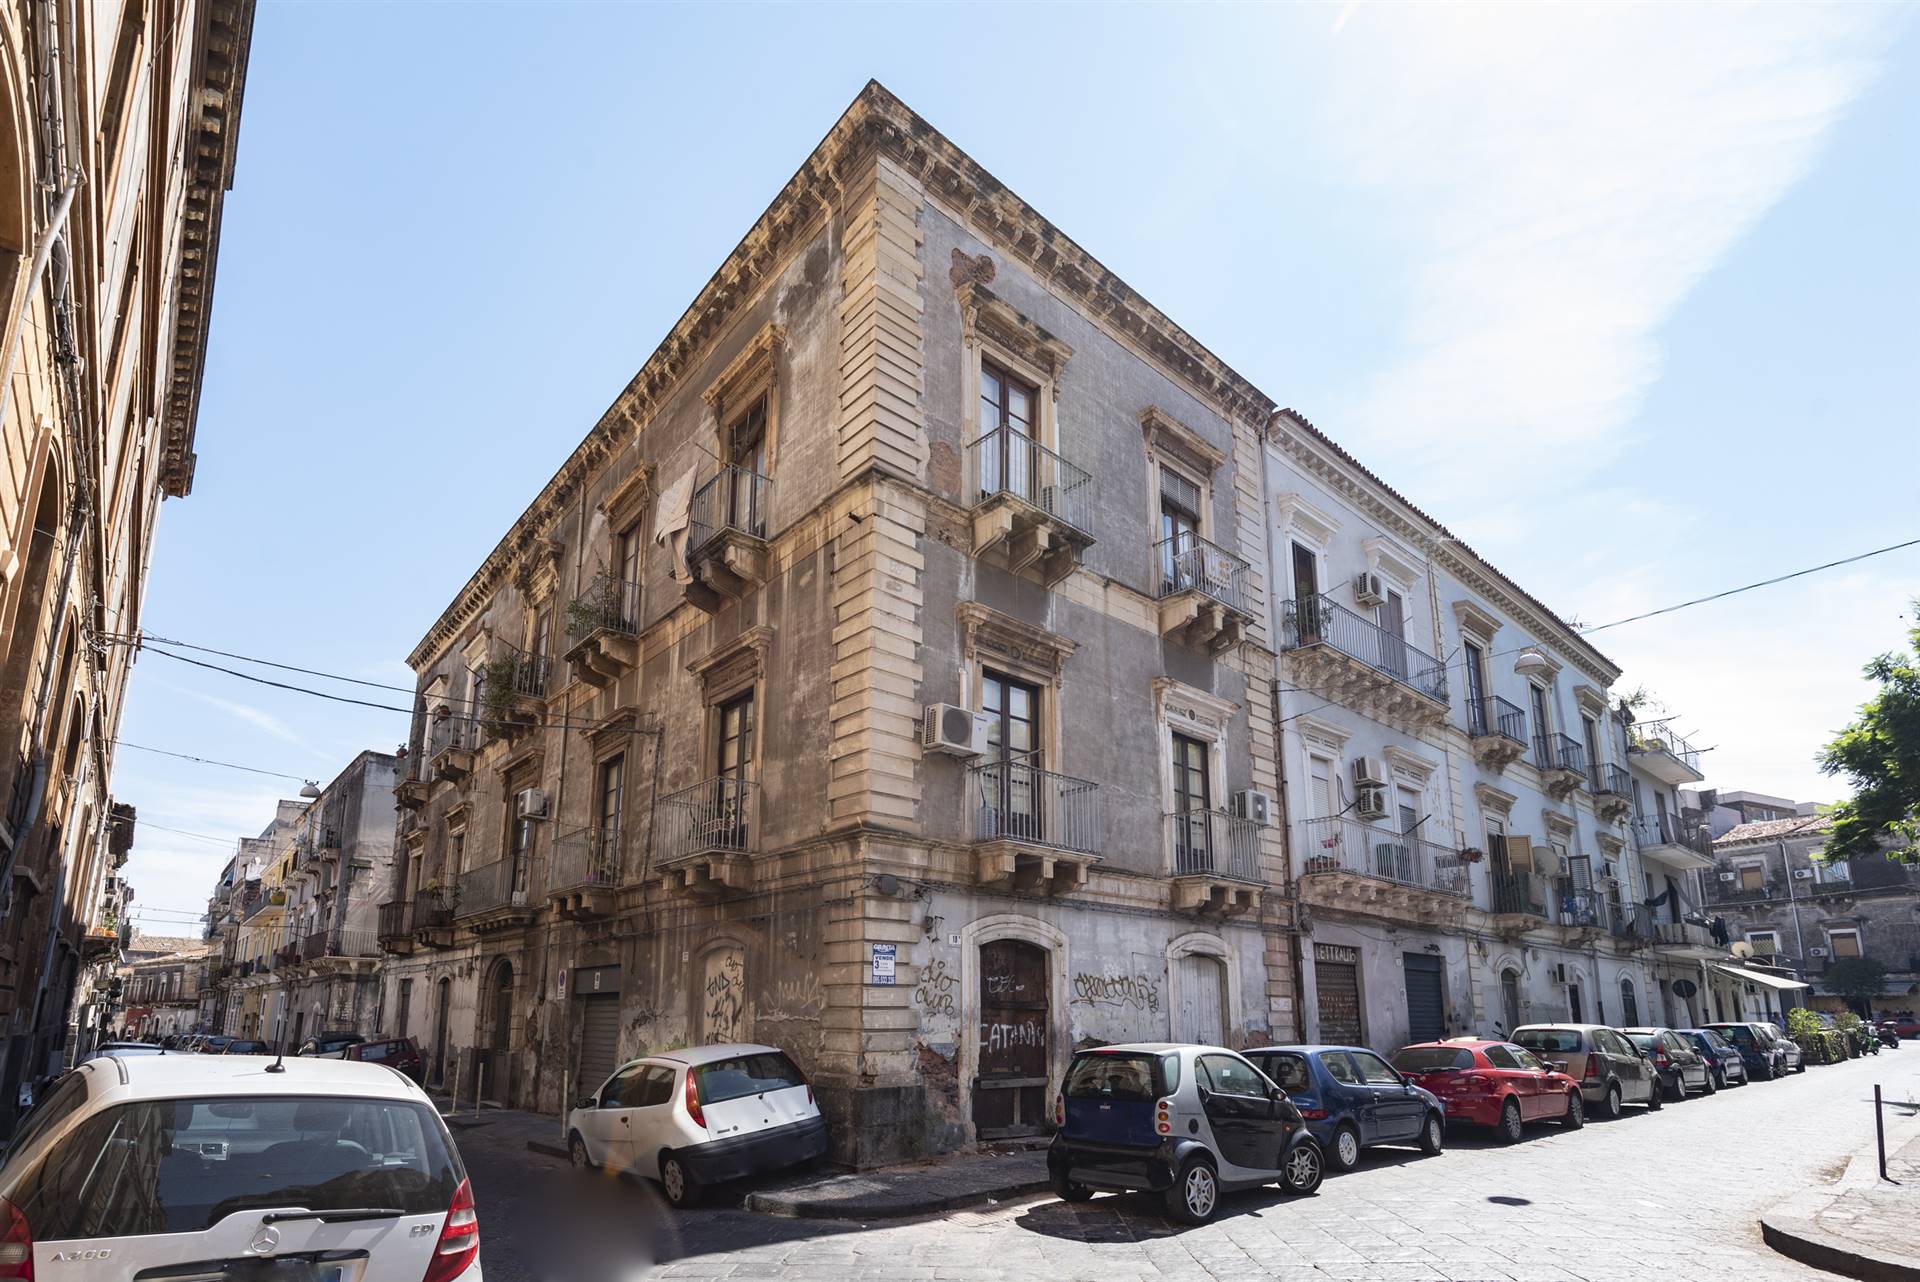 Rif. RD22 Via Naumachia Rama immobiliare propone in vendita un ampio appartamento da ristrutturare di ca 170 mq al centro storico di Catania in un 